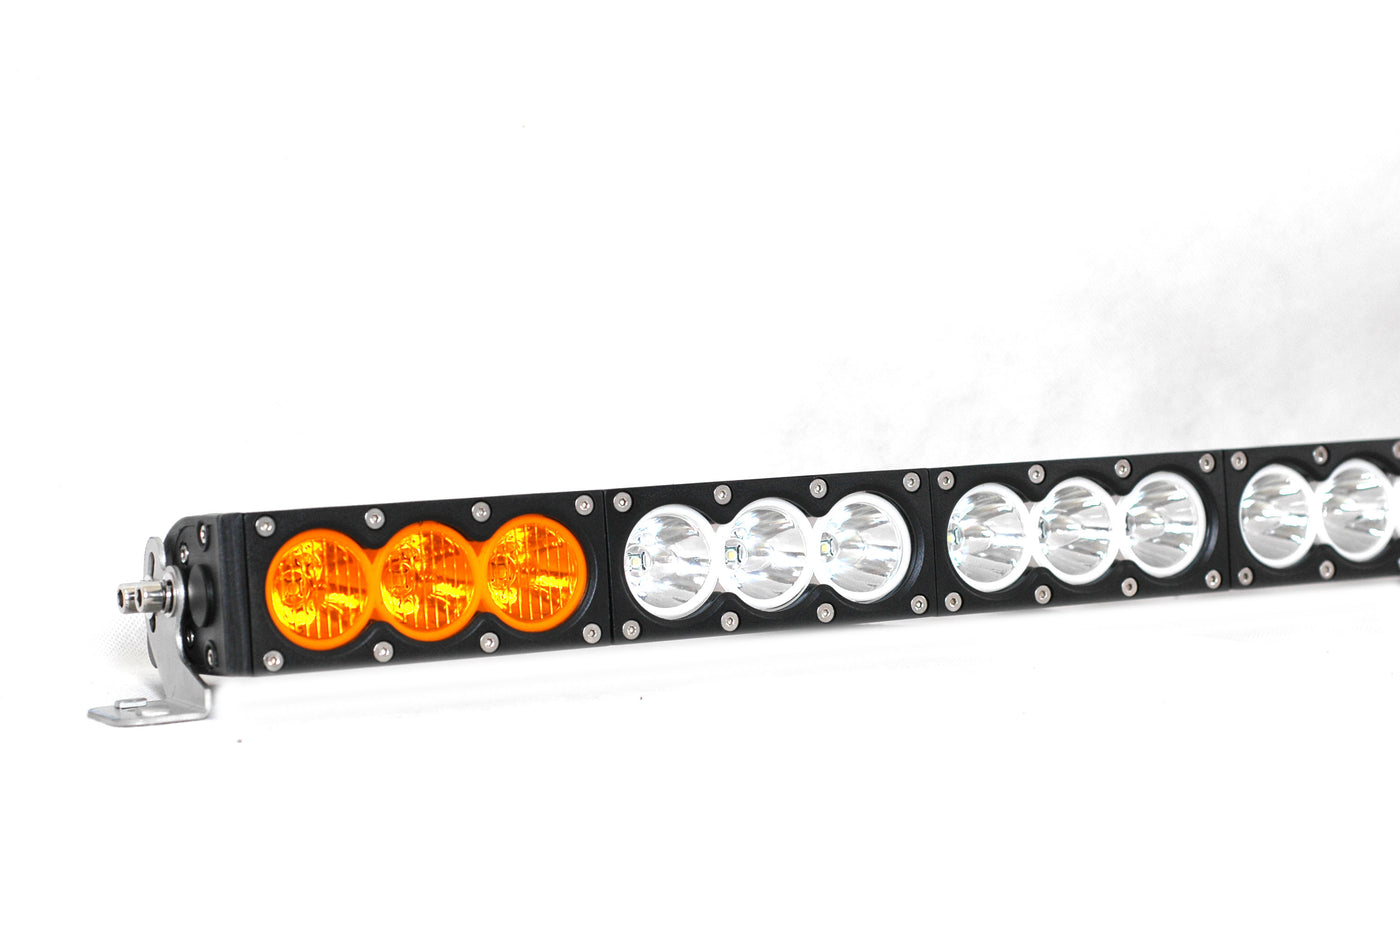 48.5" CREE LED Triple Laser Light Bar - OZI4X4 PTY LTD